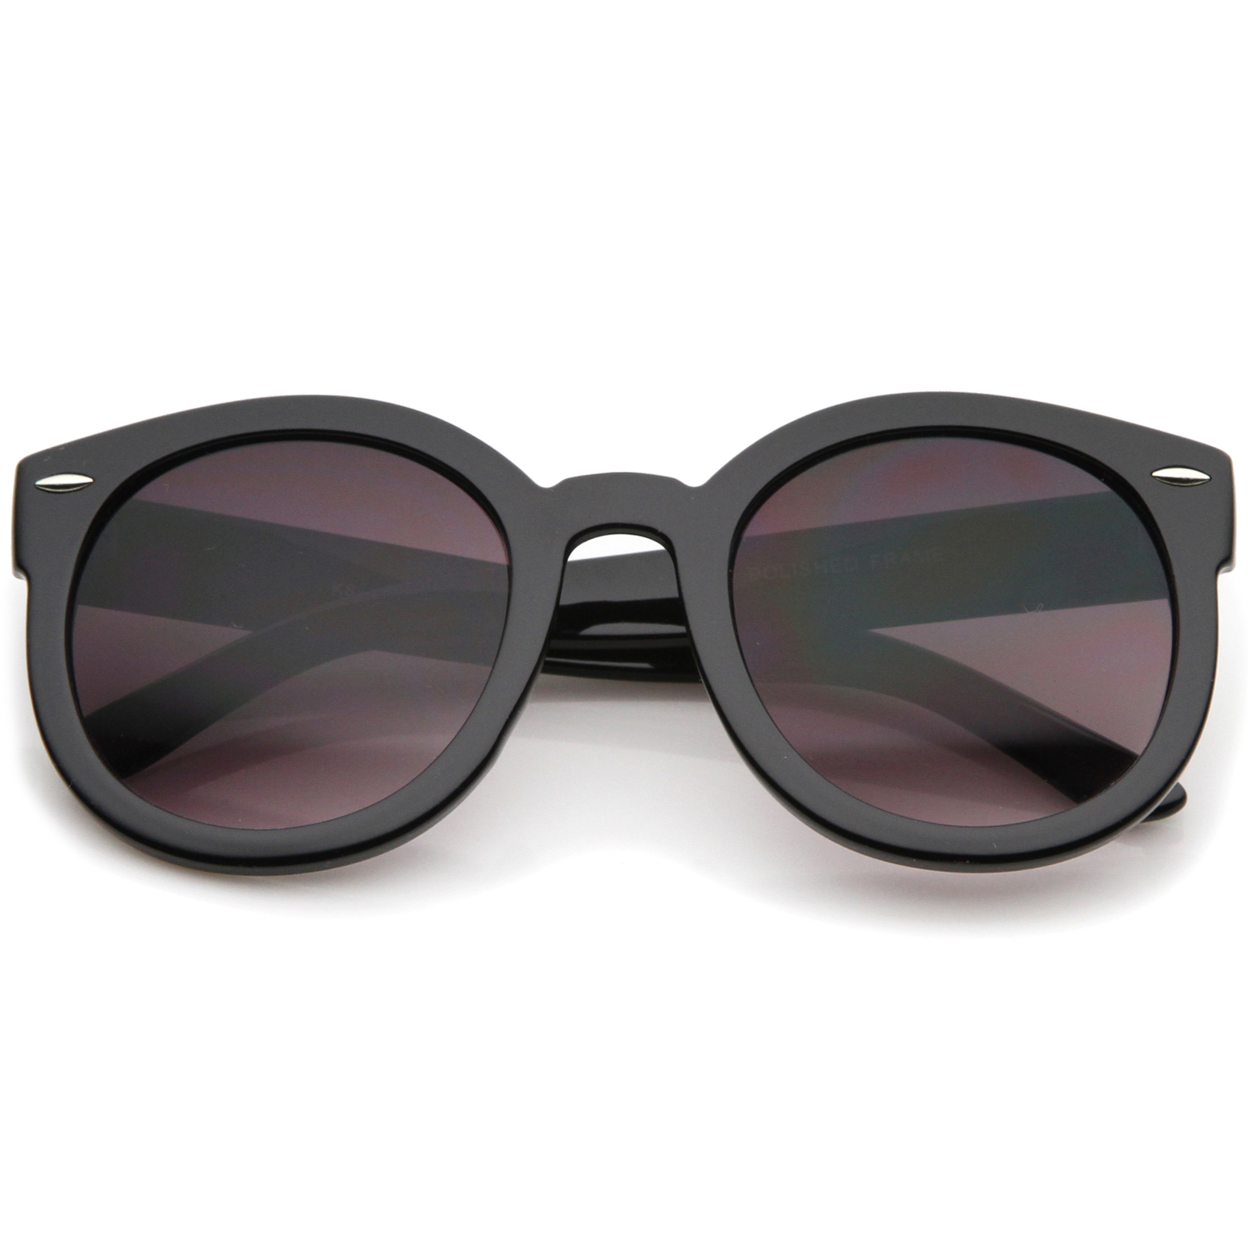 Women's Retro Oversize Horn Rimmed P3 Round Sunglasses 52mm - Tortoise / Amber